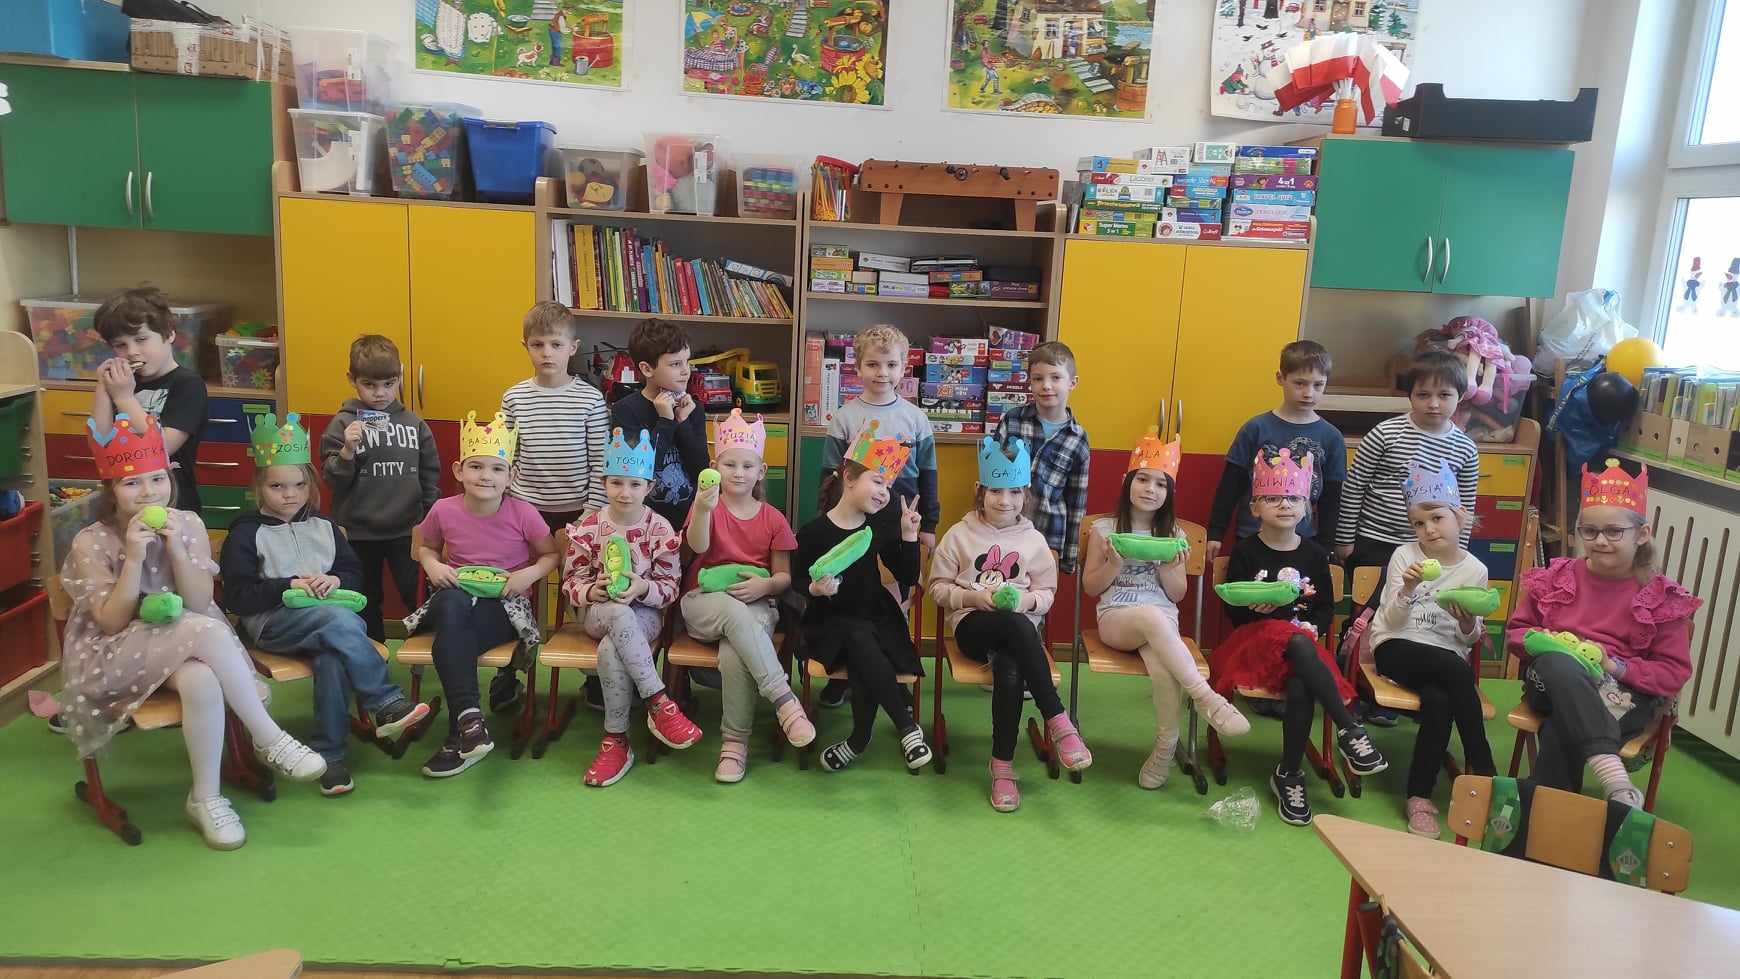 8 chłopców stoi, a 11 dziewczynek siedzi na krzesłach w sali lekcyjnej. Dziewczynki trzymają w rękach zielone piórniki, a na głowie mają papierowe korony. W tle szafki i zabawki.